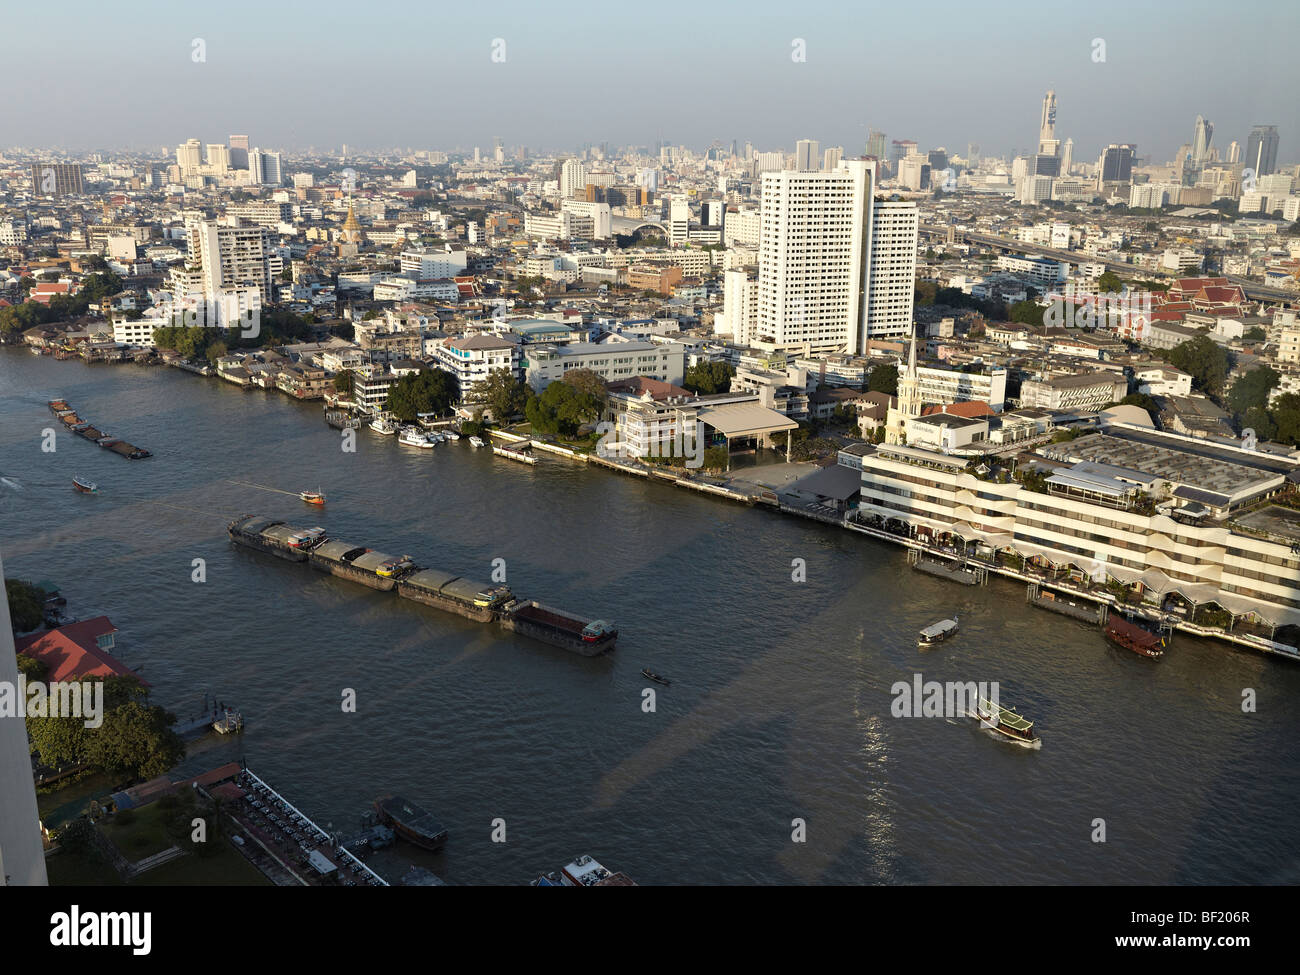 Bangkok skyline from the Chao Phraya river. Thailand Stock Photo